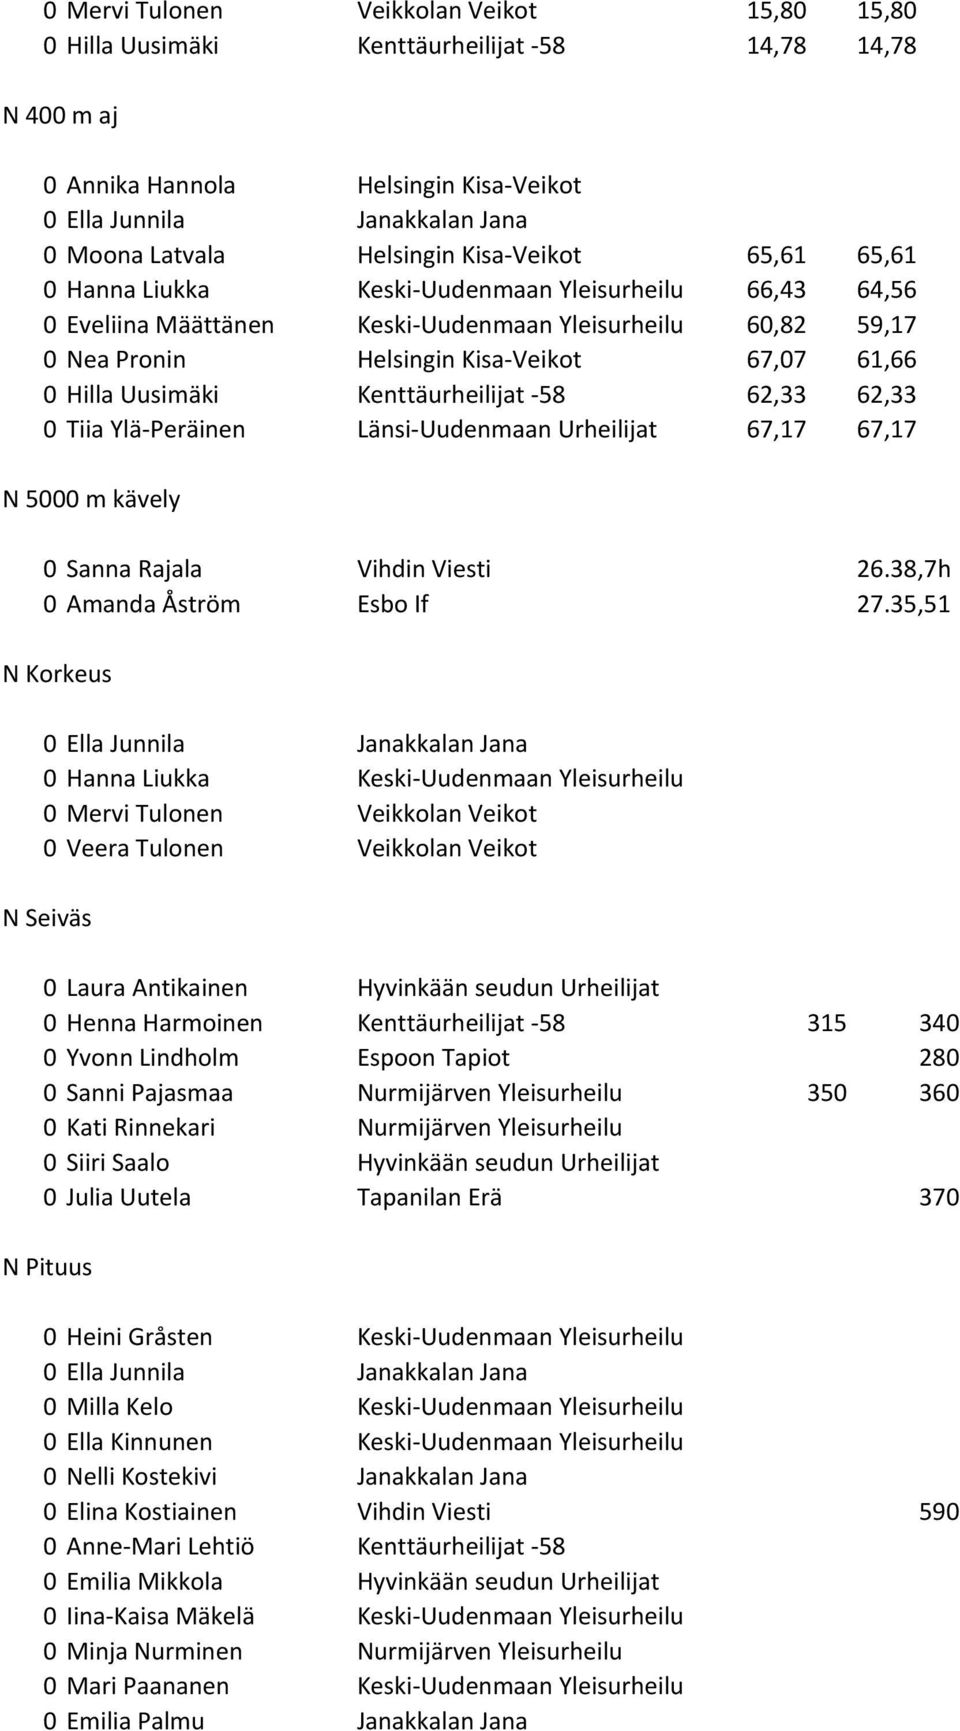 0 Hilla Uusimäki Kenttäurheilijat -58 62,33 62,33 0 Tiia Ylä-Peräinen Länsi-Uudenmaan Urheilijat 67,17 67,17 N 5000 m kävely 0 Sanna Rajala Vihdin Viesti 26.38,7h 0 Amanda Åström Esbo If 27.